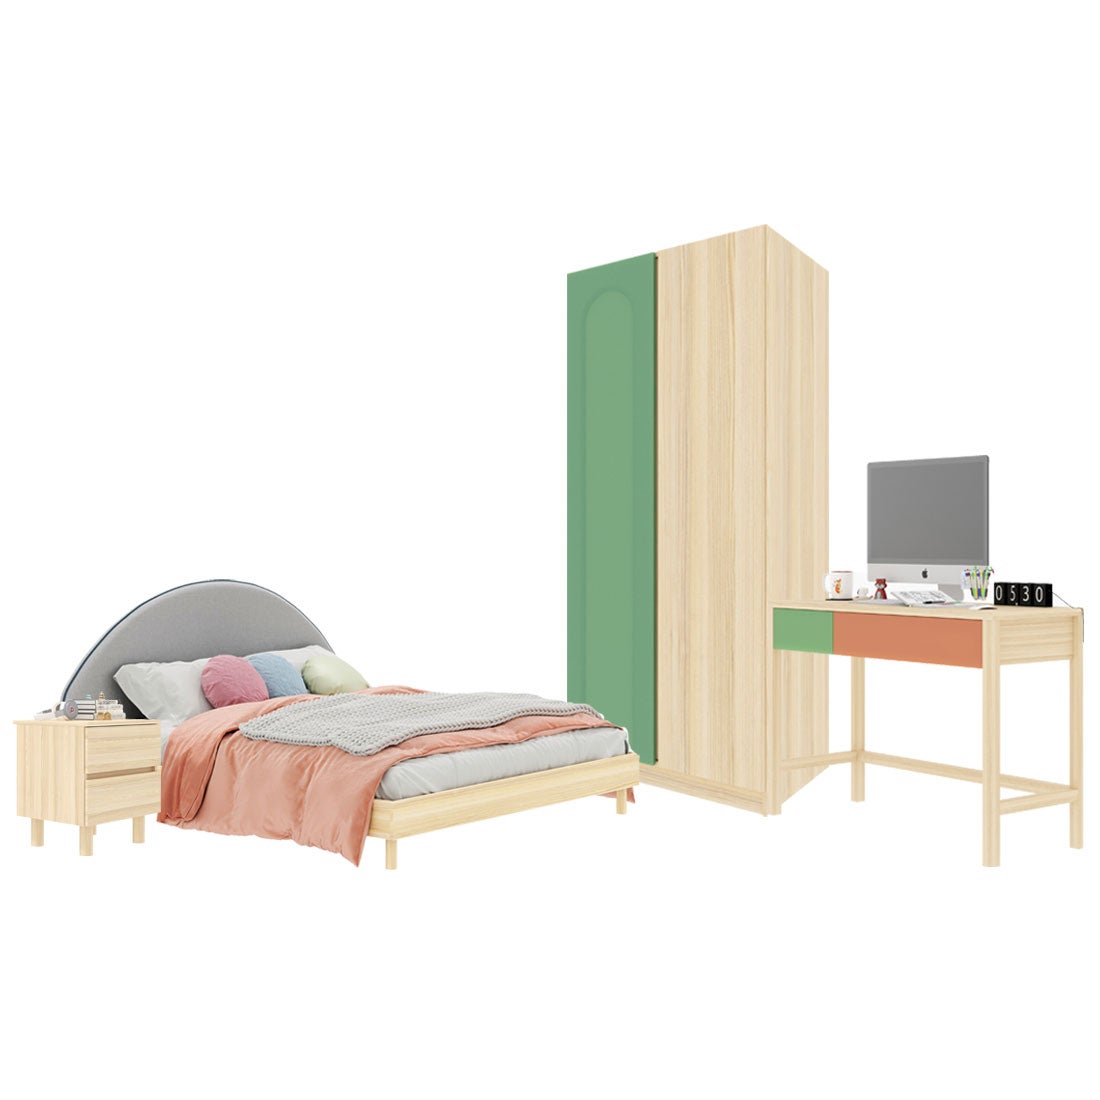 ชุดห้องนอน ขนาด 5 ฟุต-เบาะครีม รุ่น Bingsoo & ตู้เสื้อผ้า 90 ซม. พร้อมตู้ข้างเตียง สีเขียว01